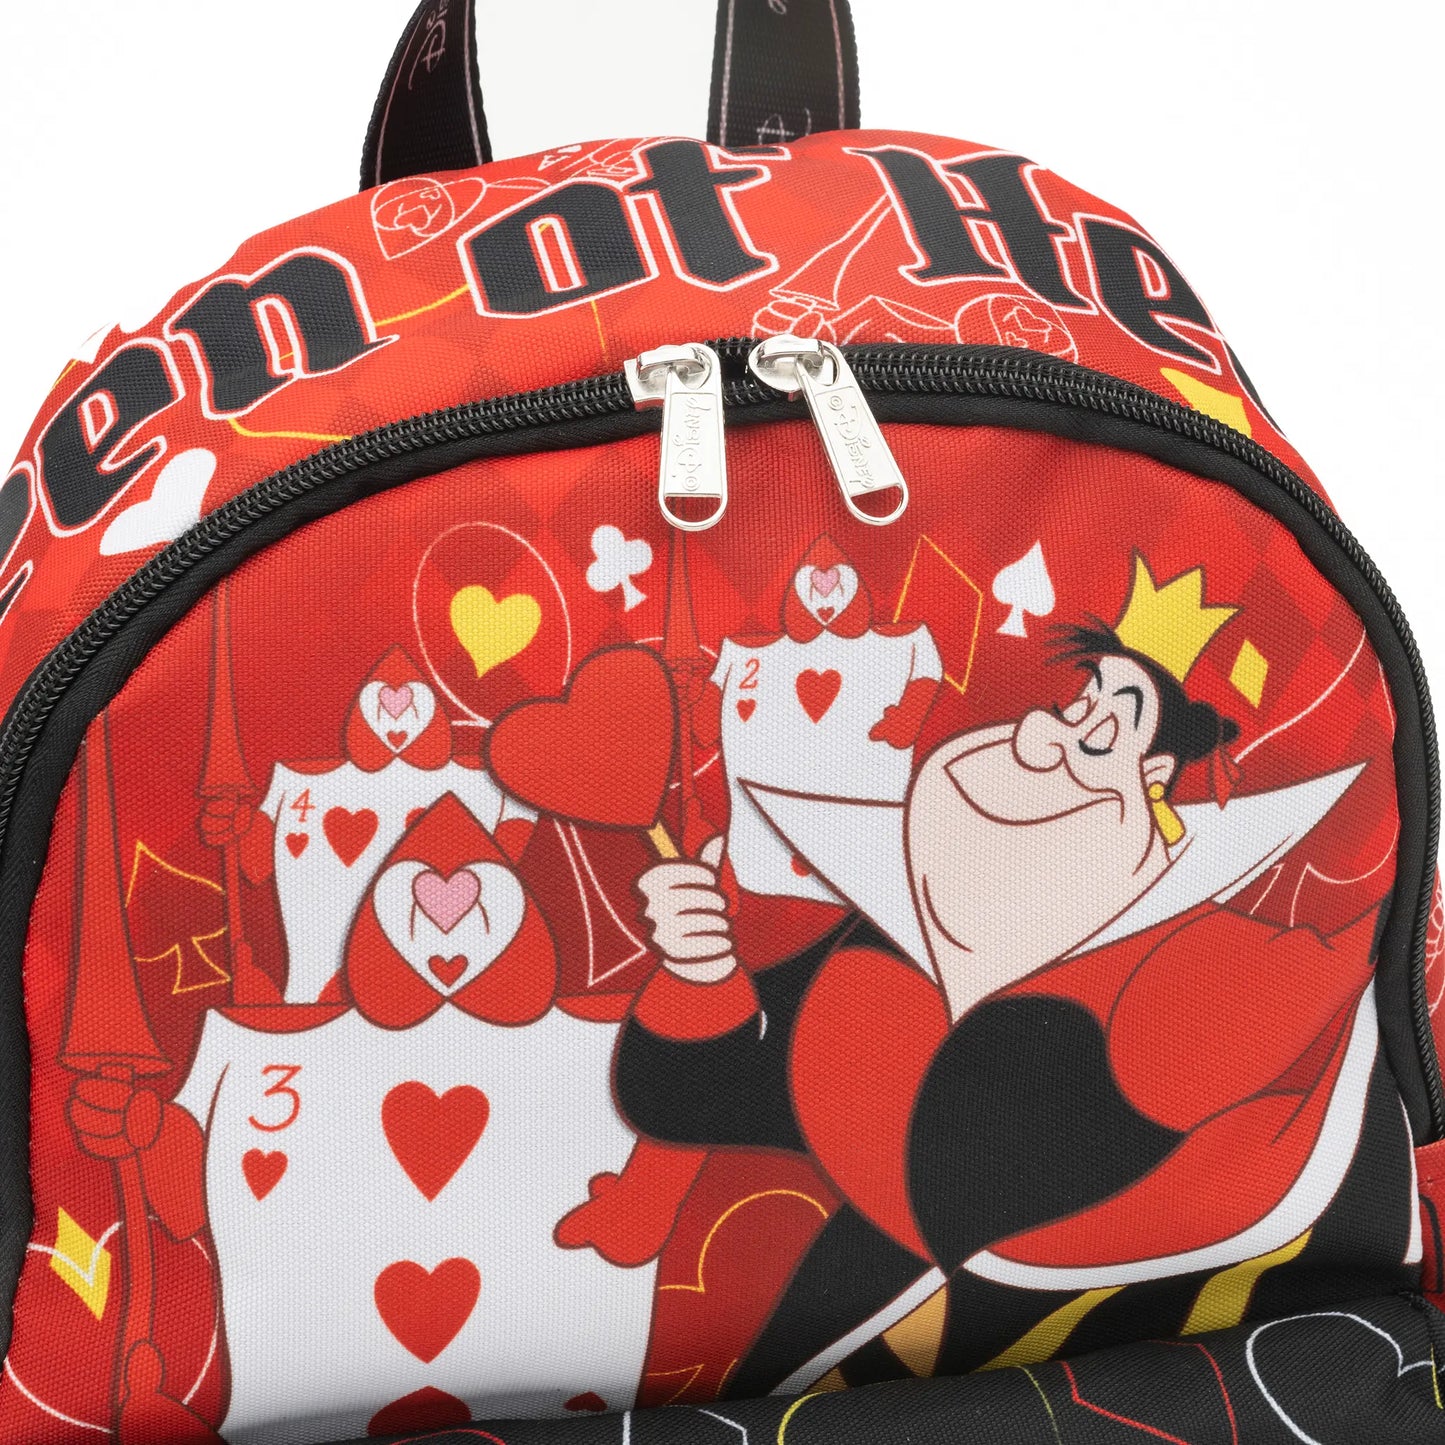 
                  
                    Disney Alice in Wonderland - Queen of Hearts 13-inch Nylon Backpack
                  
                